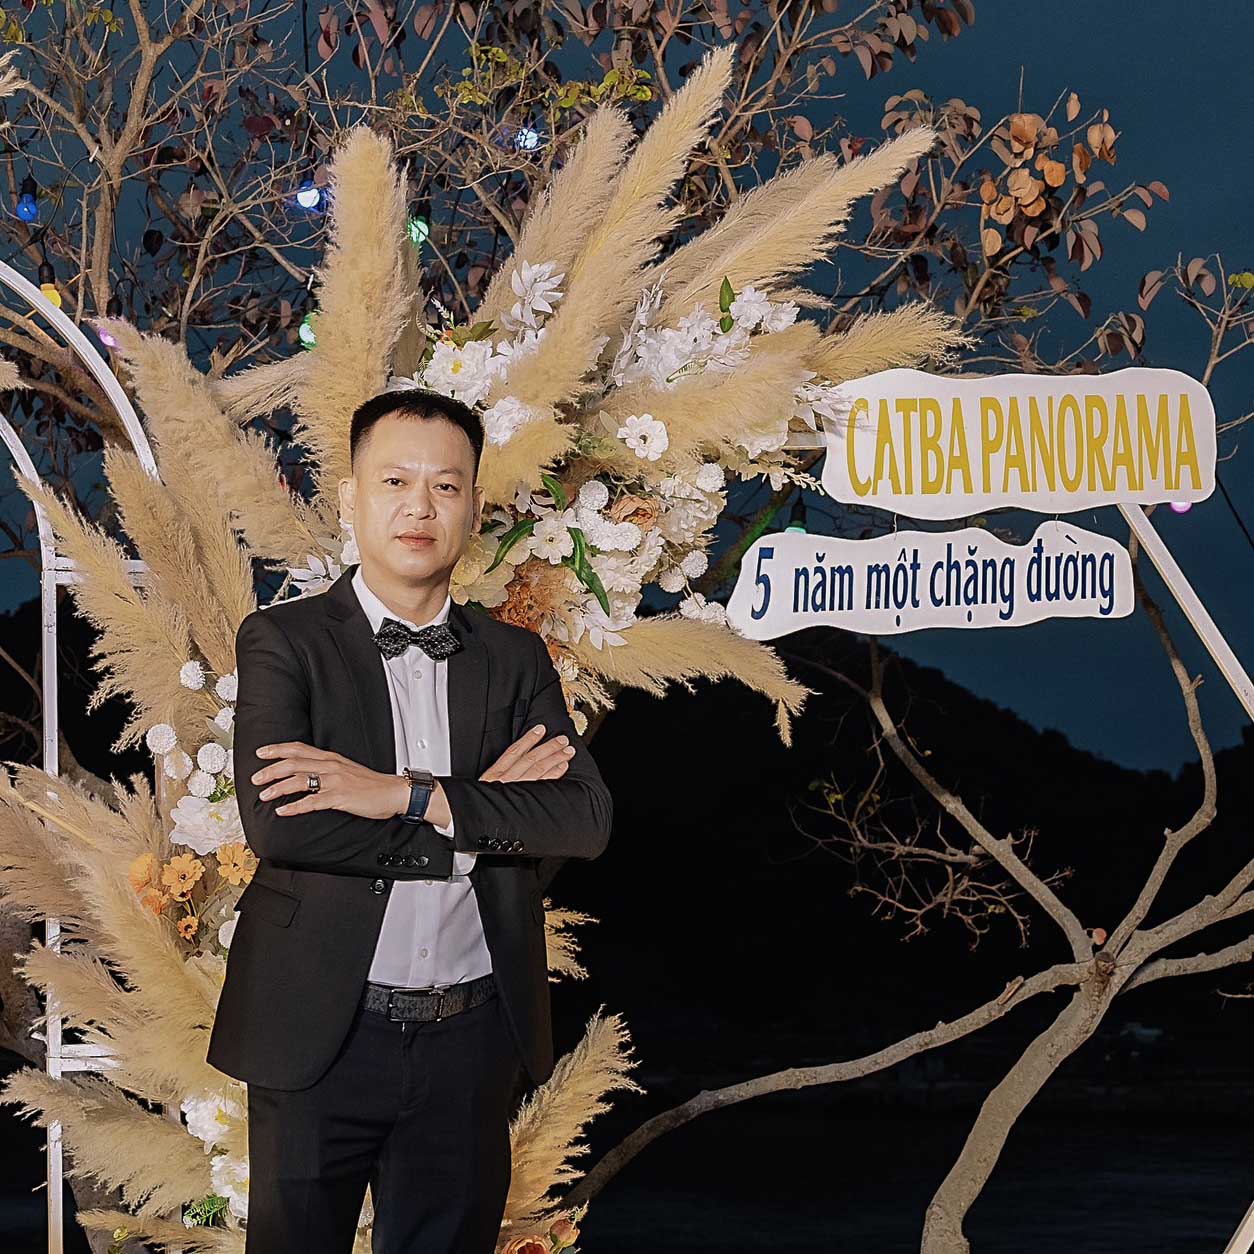 Mr Thế Anh - CEO Cát Bà Panorama Travel